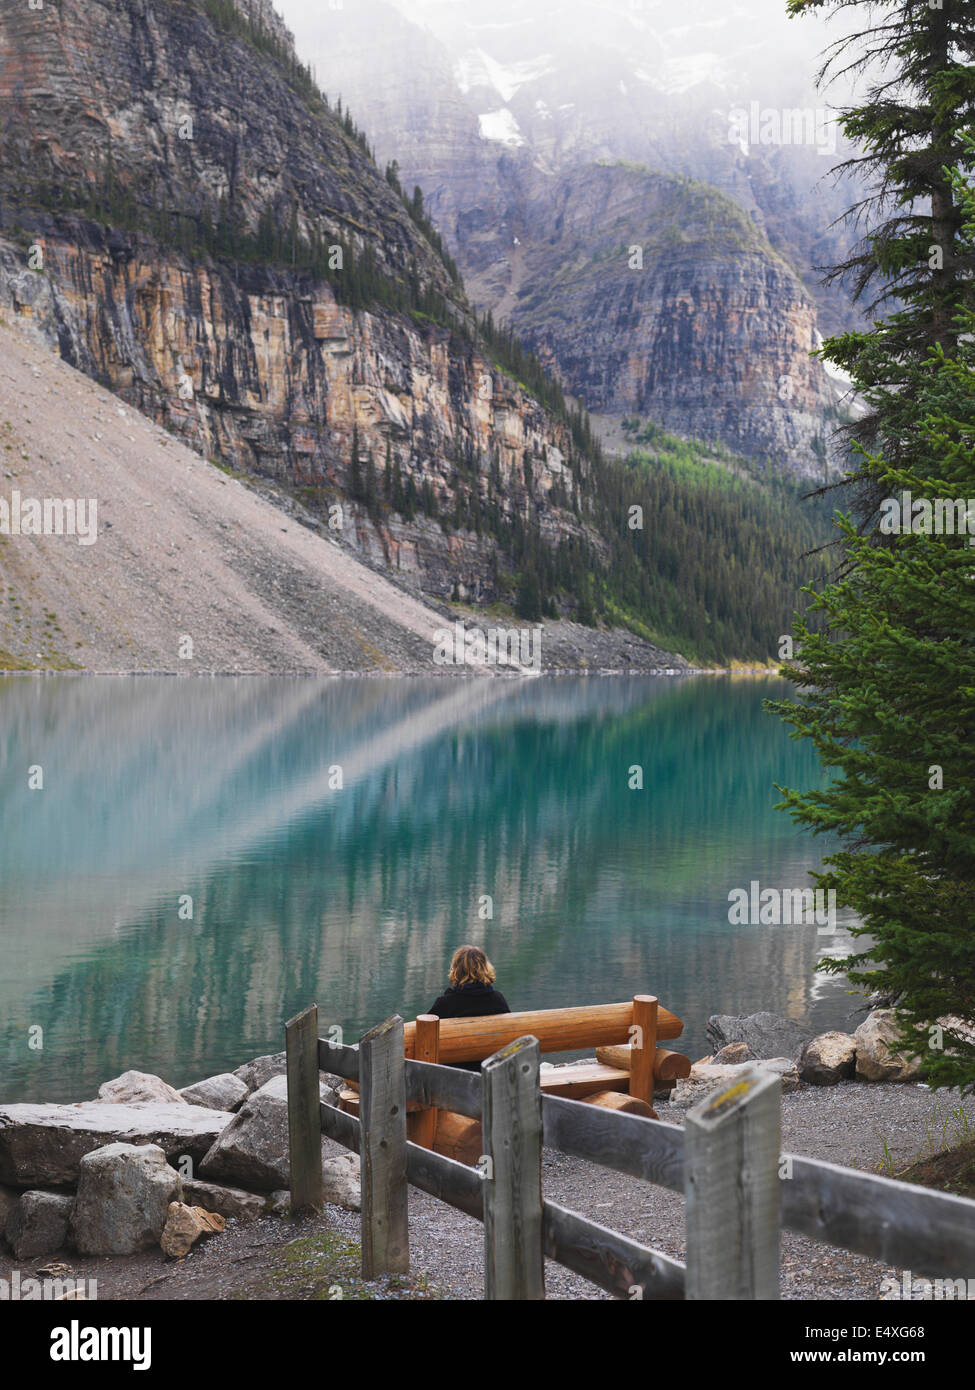 Assis dans la solitude sur un banc de parc au lac Moraine, dans le parc national Banff. La réflexion sur la vie. Banque D'Images